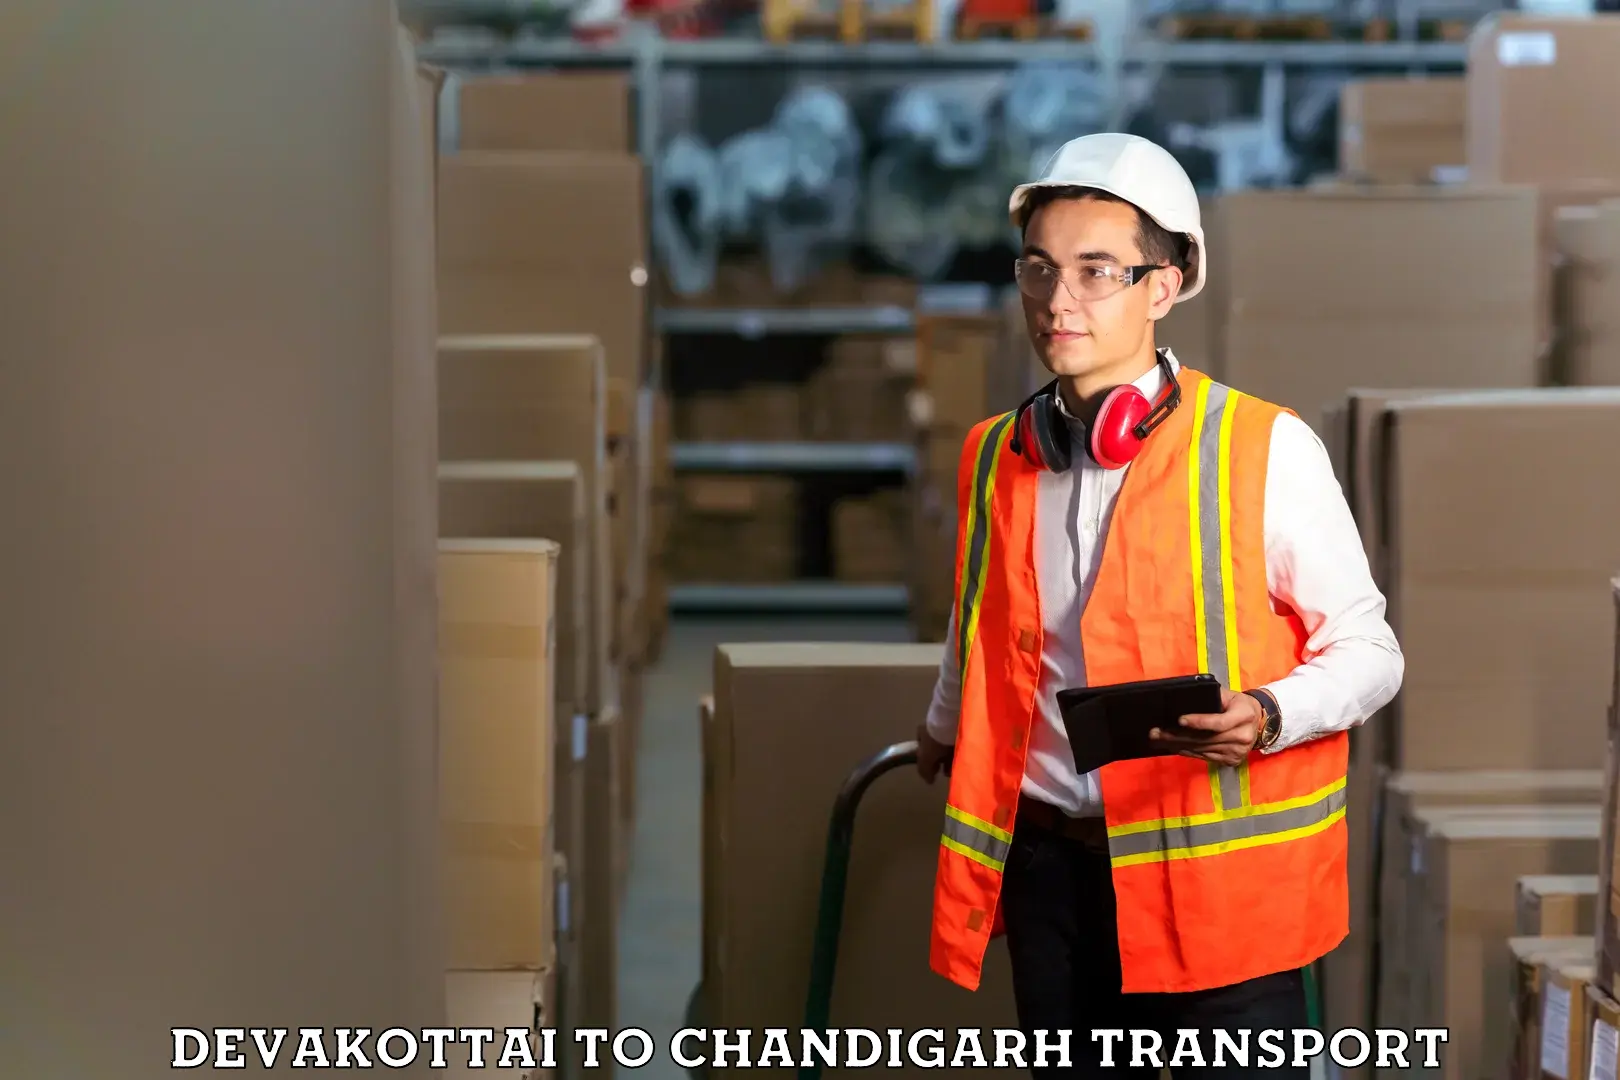 Cargo transportation services Devakottai to Chandigarh